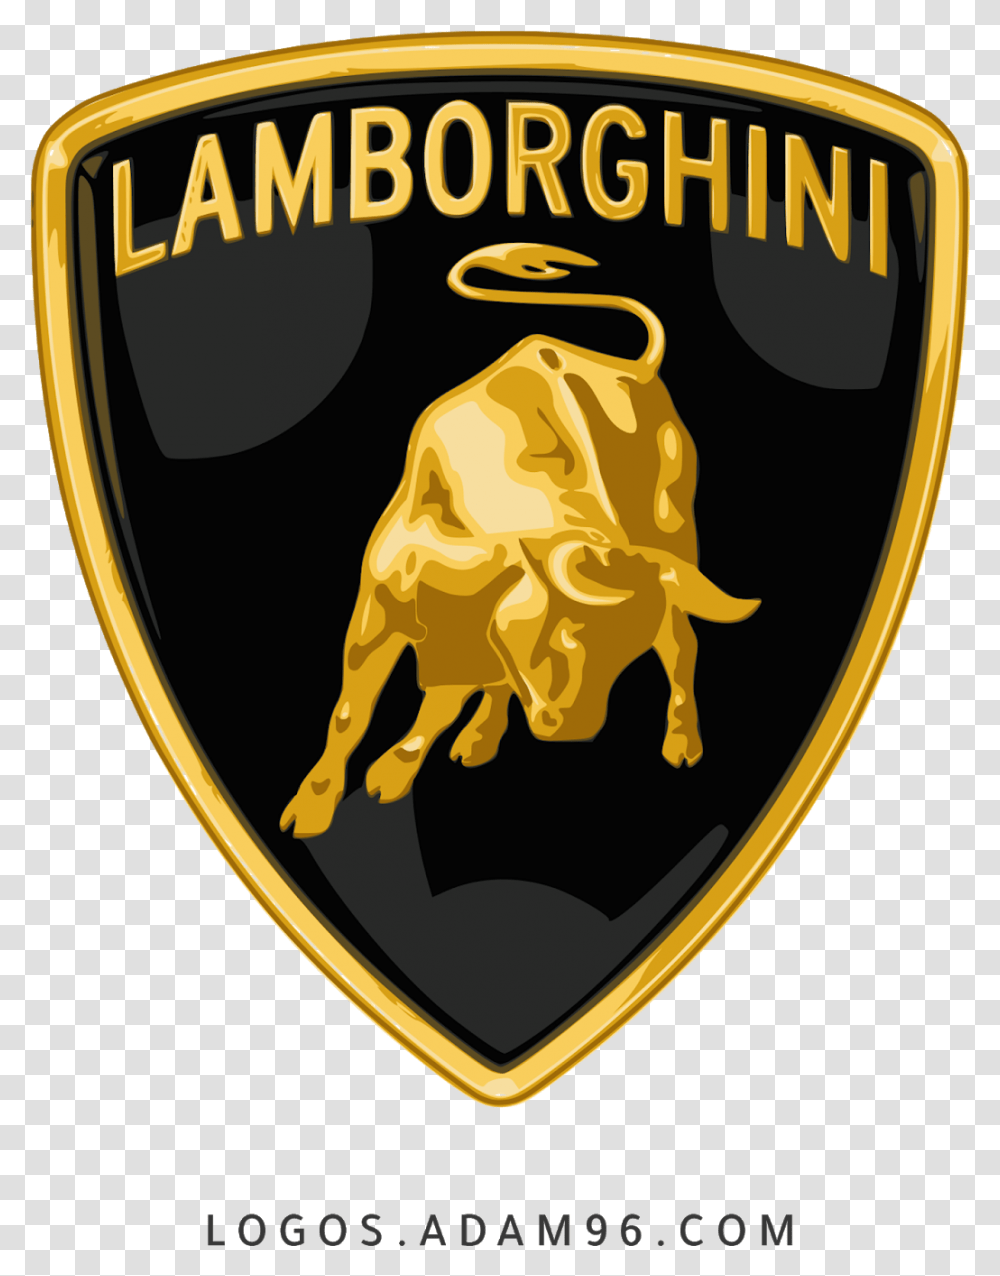 Lamborghini Logo Download Logos With Lamborghini Car Logo, Symbol, Trademark, Badge, Emblem Transparent Png